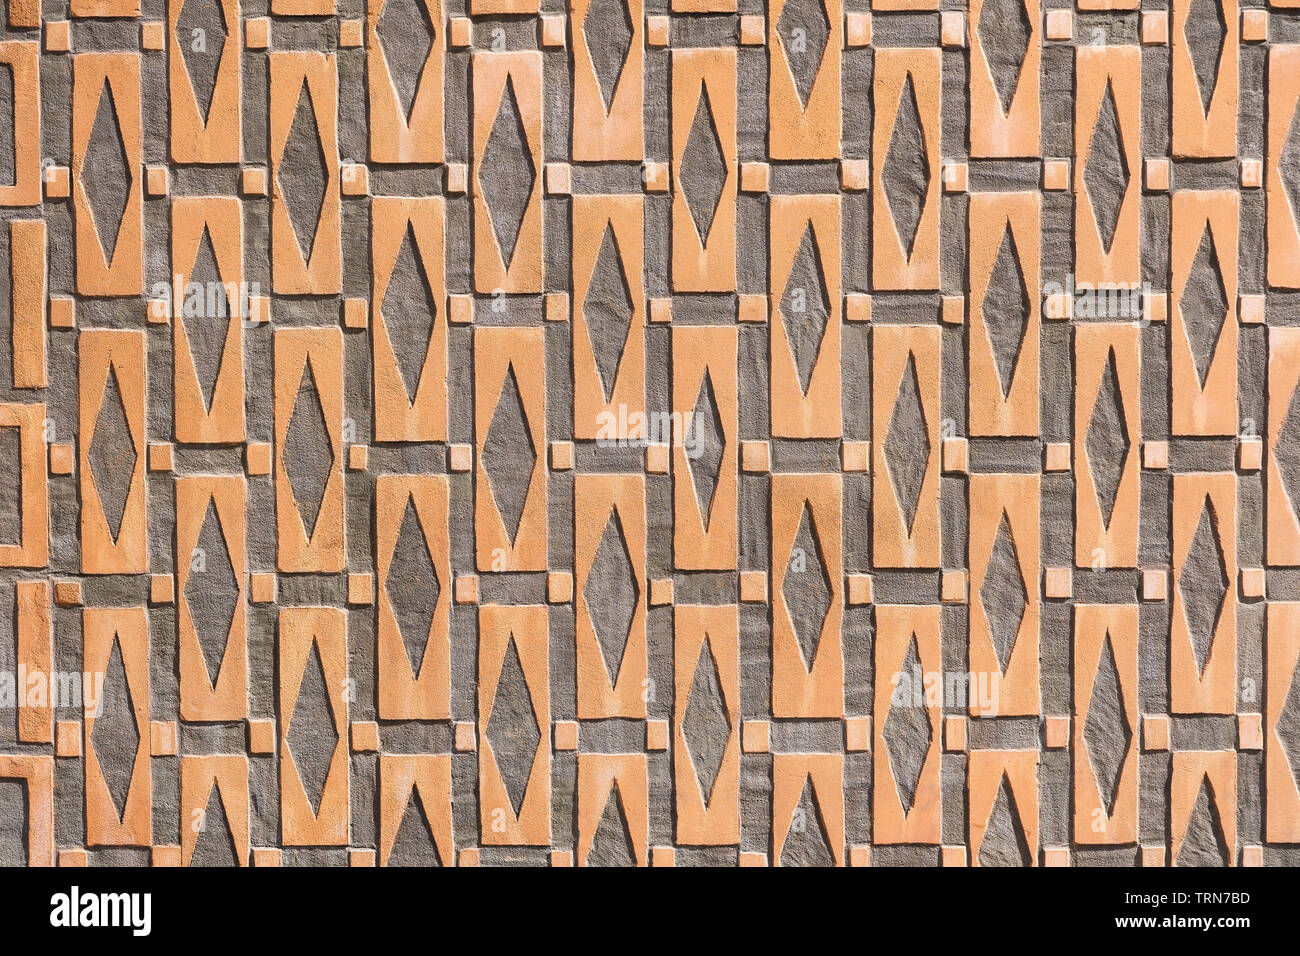 Hintergrund oder Textur mit geometrische Muster mit rechteckigen, quadratischen und rhombus Formen aus dem historischen Haus Fassade in der Altstadt von Warschau in Polen. Stockfoto